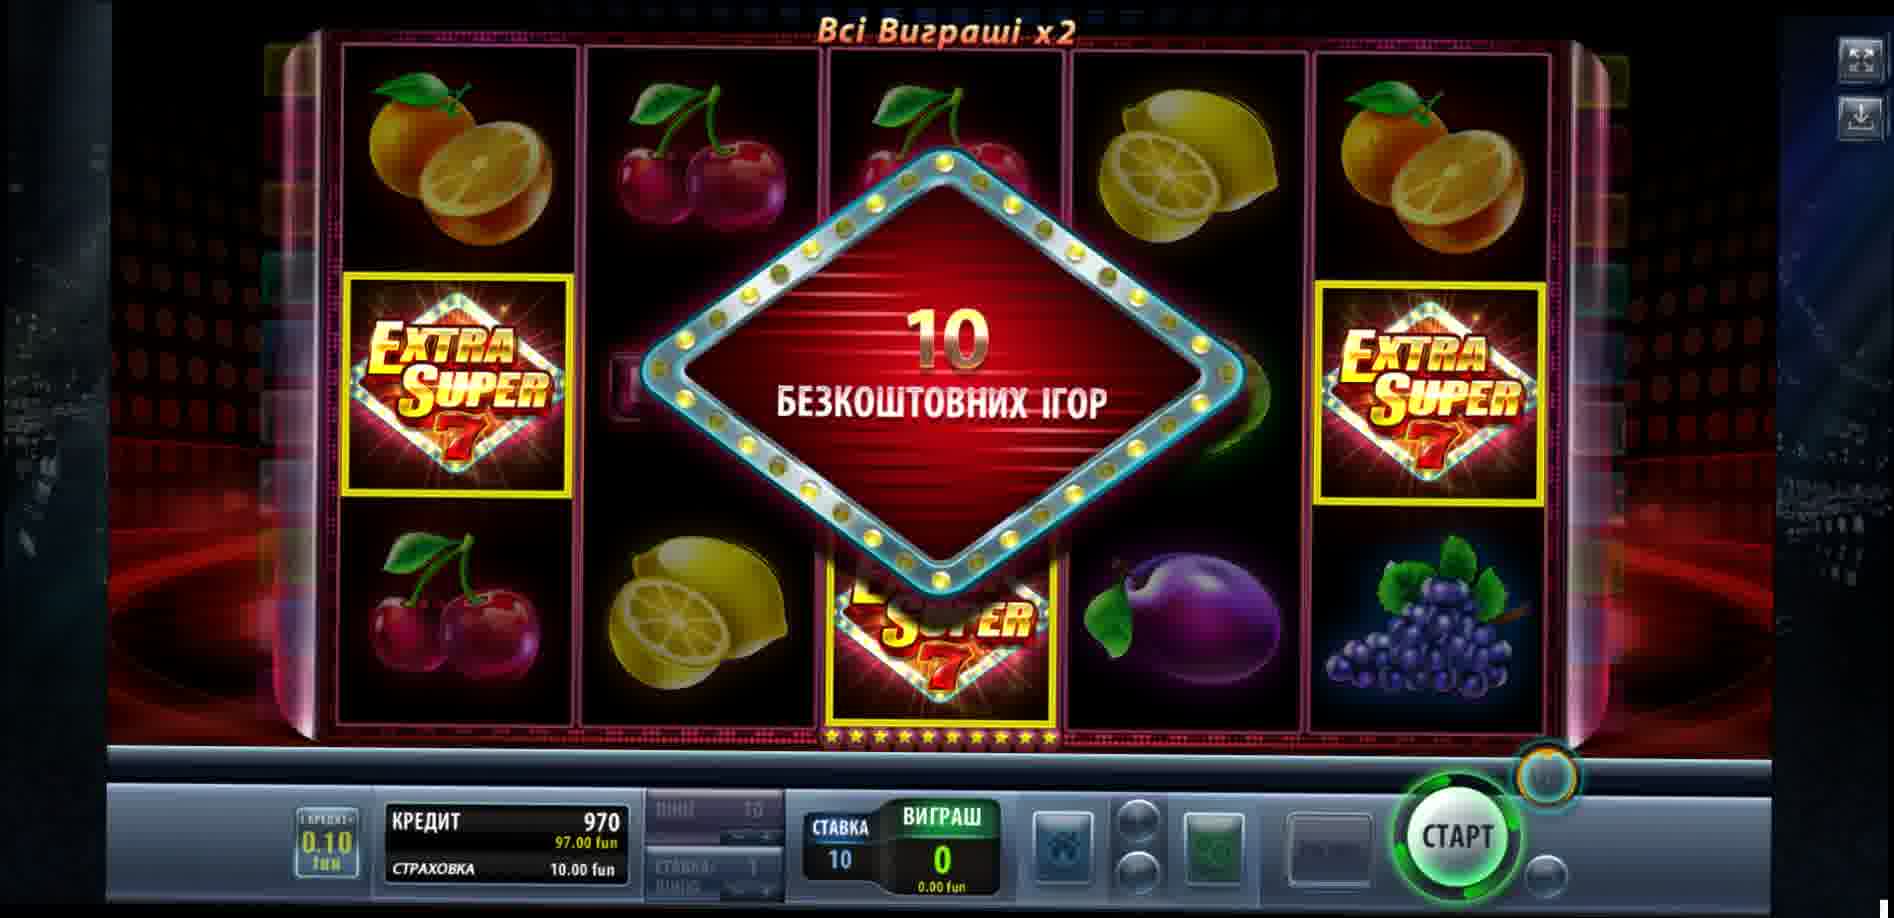 Legale online casinos deutschland